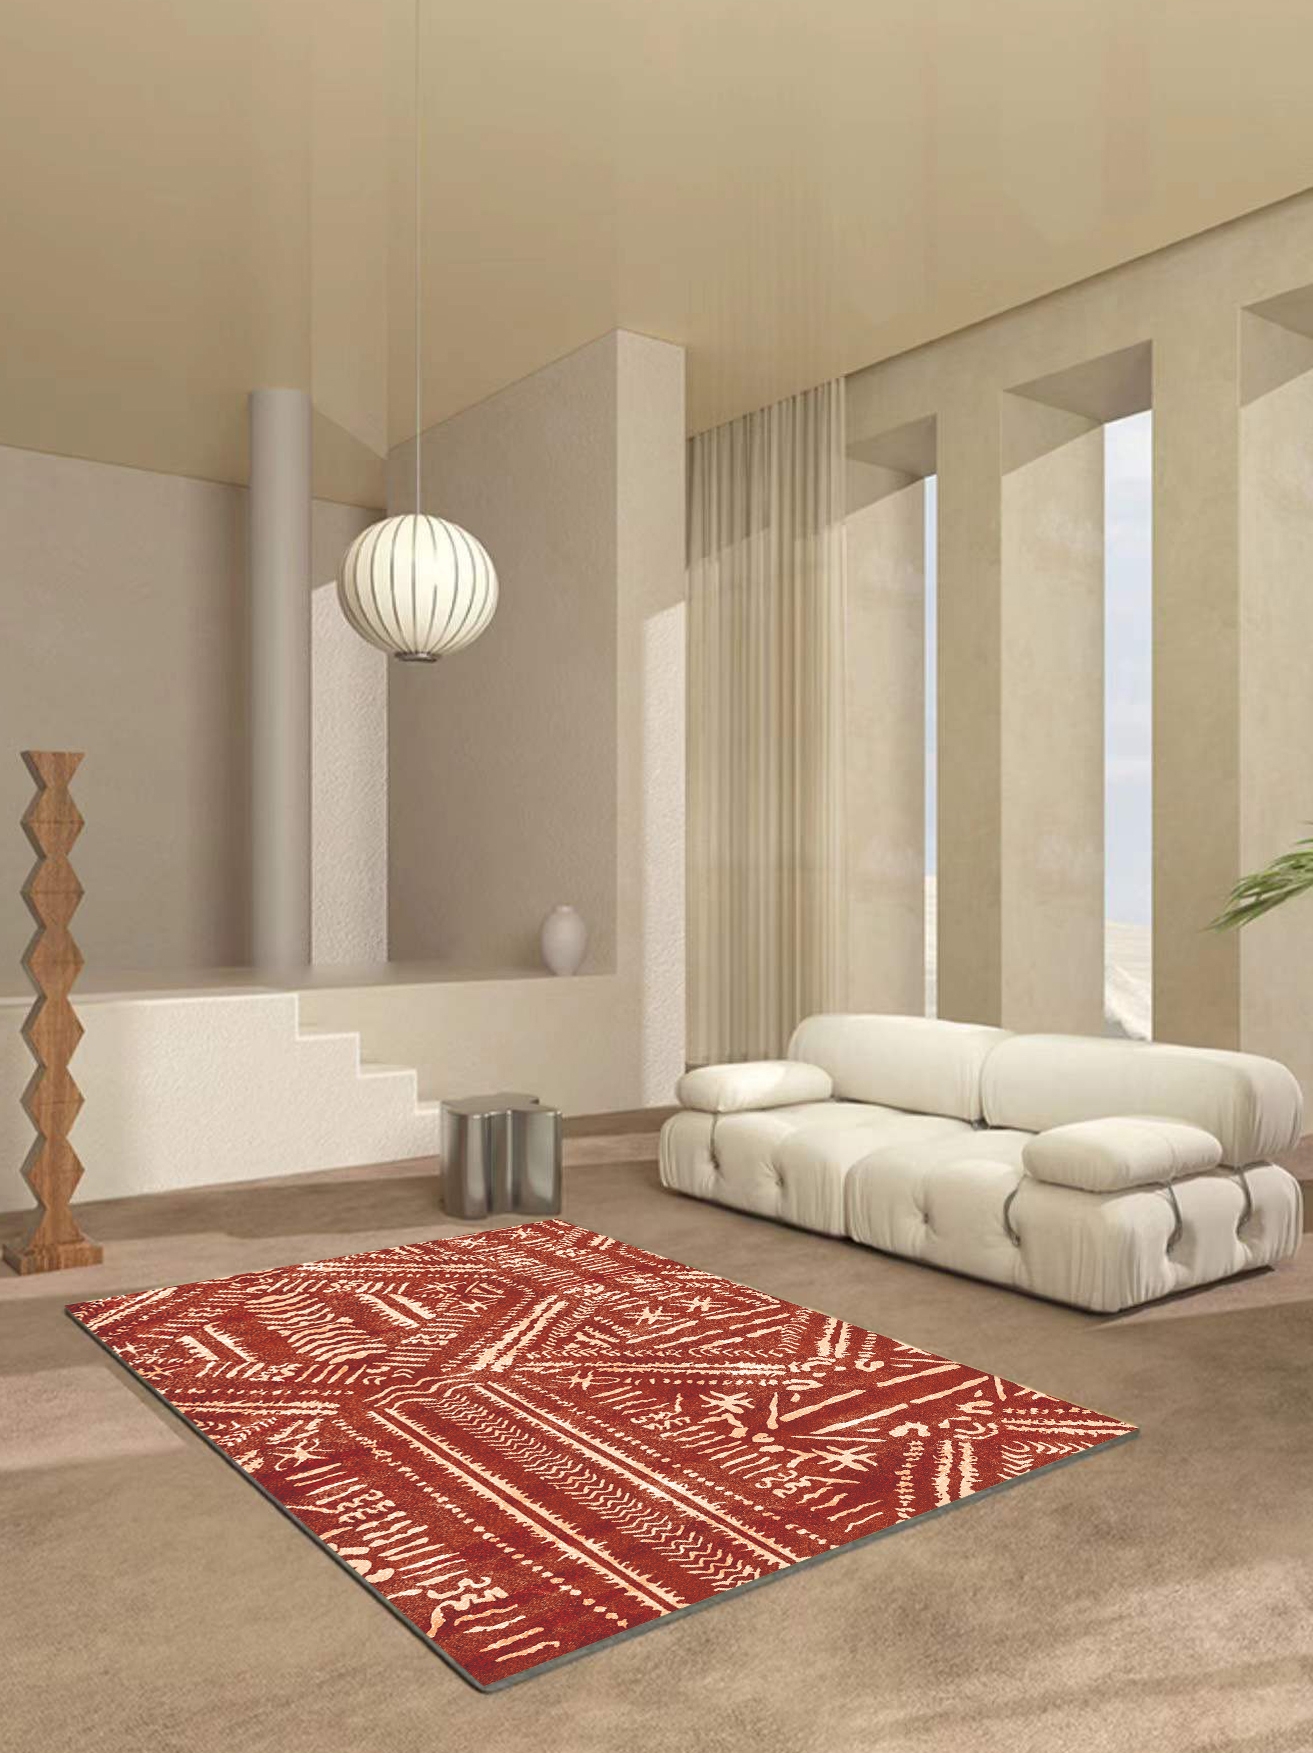 歐式風格抽象圖案地毯 化纖材質 客廳臥室書房家用地毯